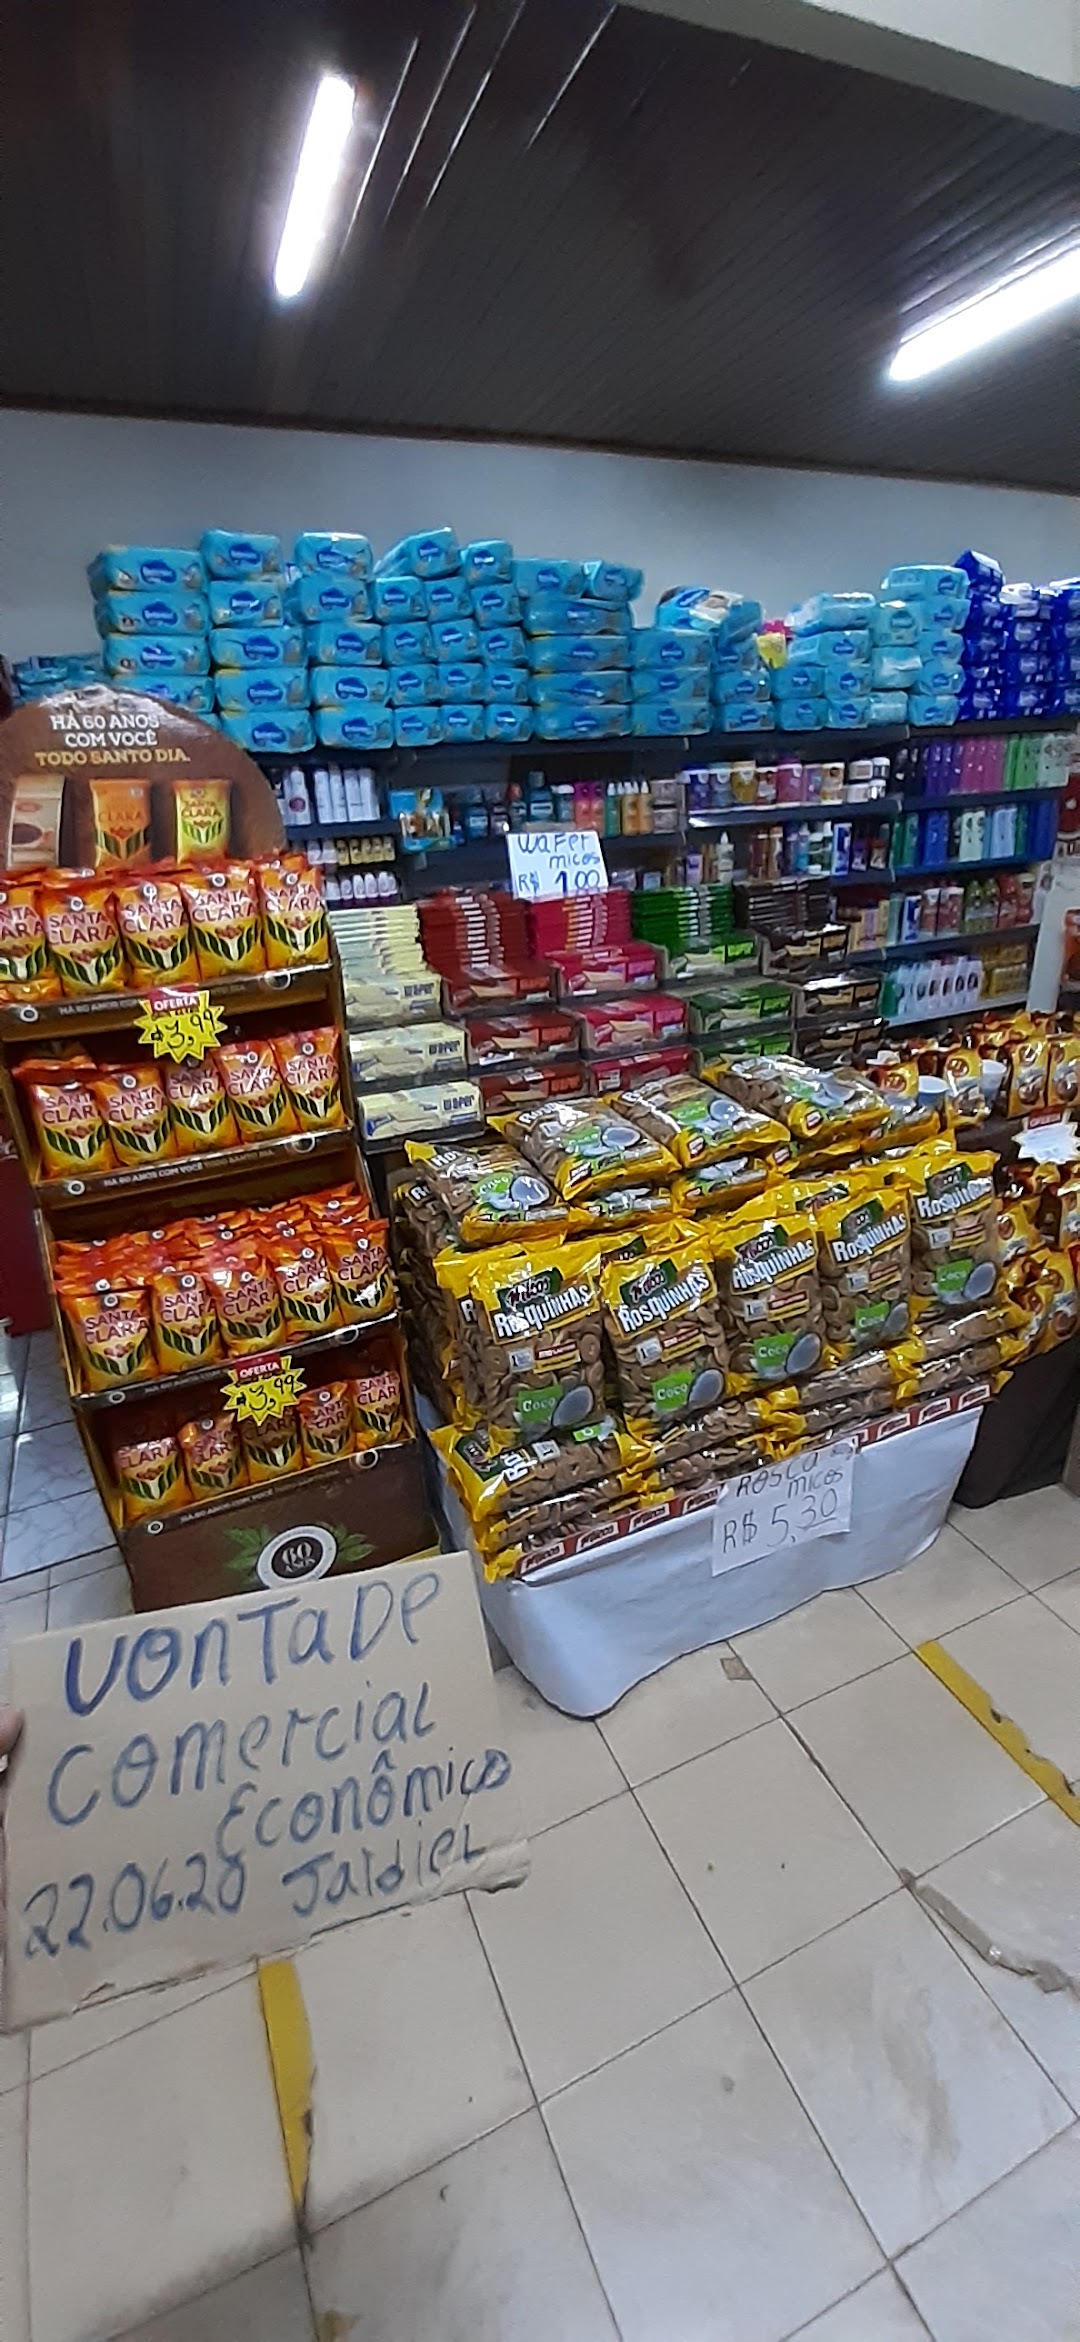 Supermercado Planalto